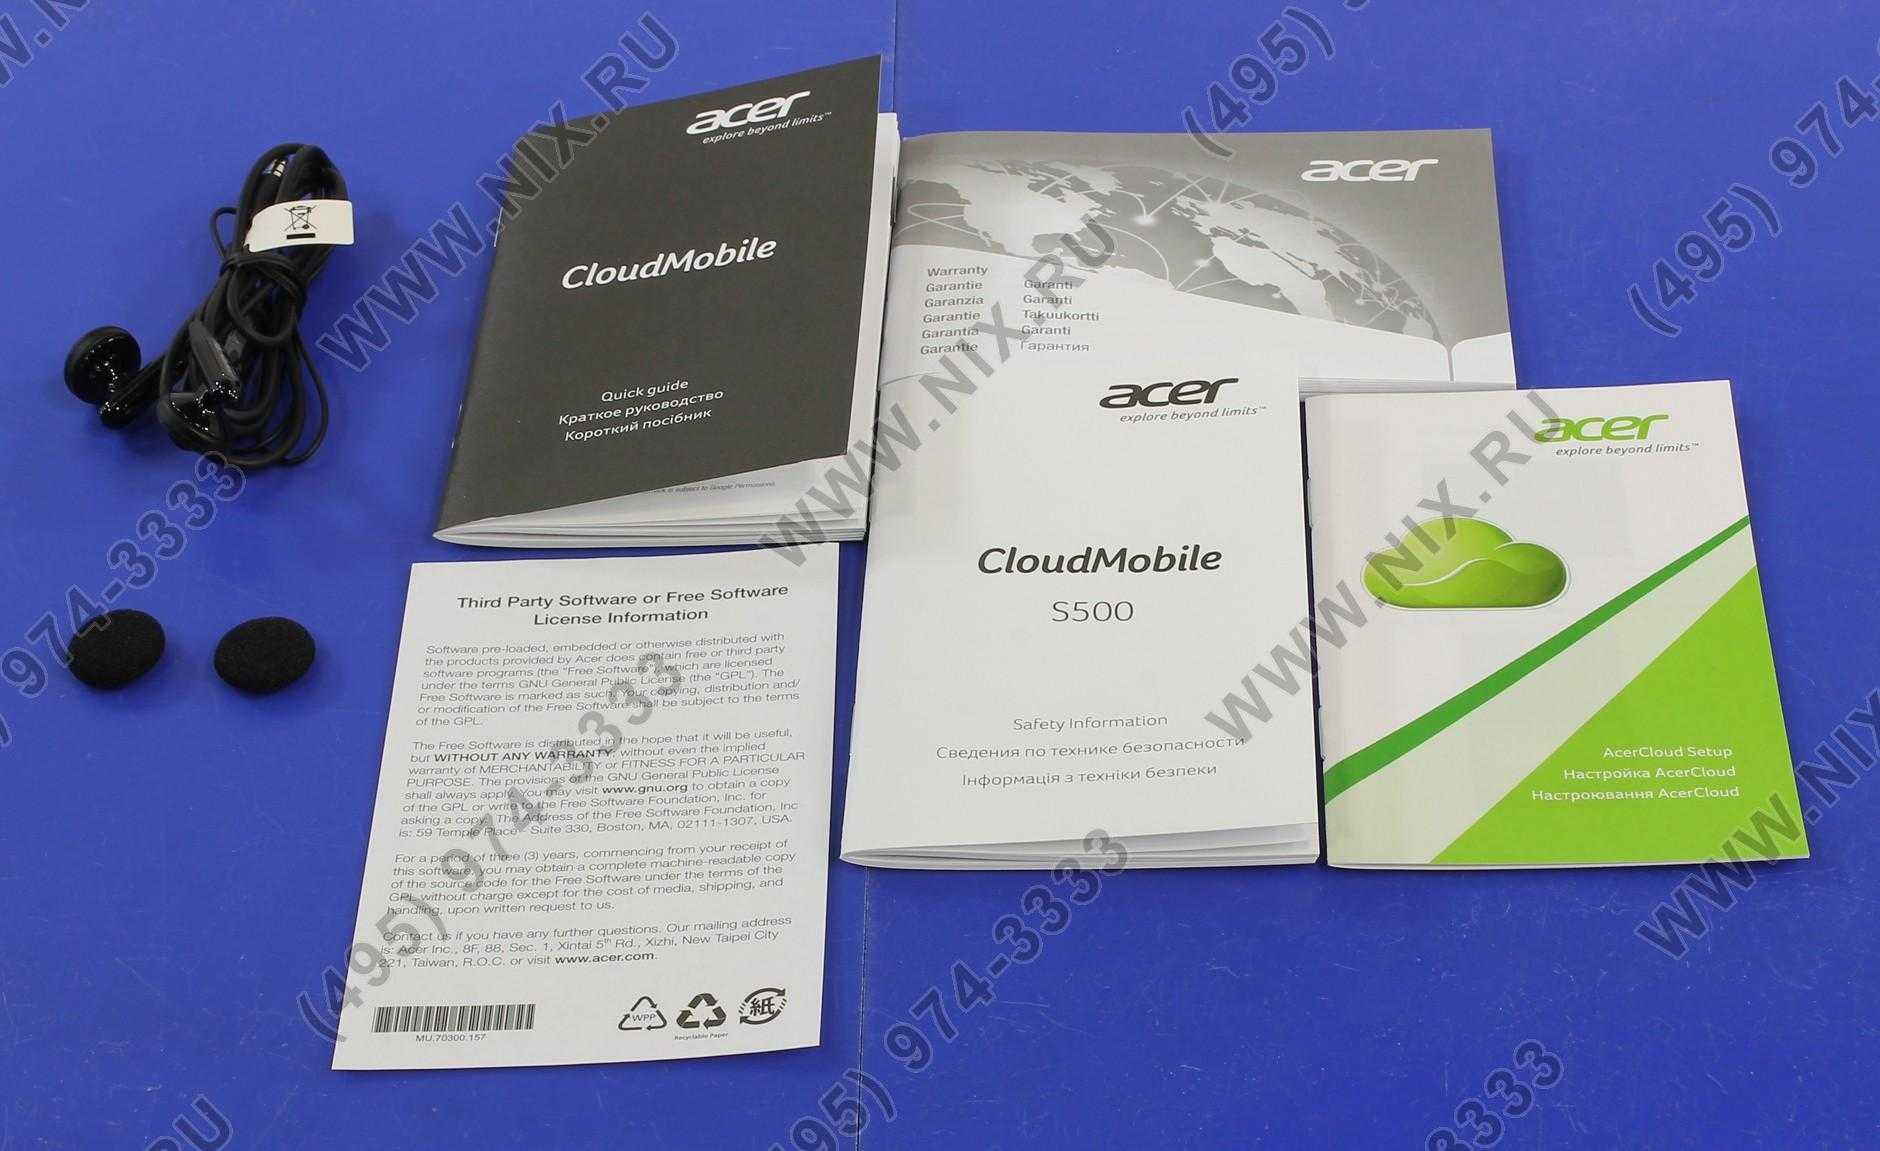 Acer cloudmobile s500 купить по акционной цене , отзывы и обзоры.